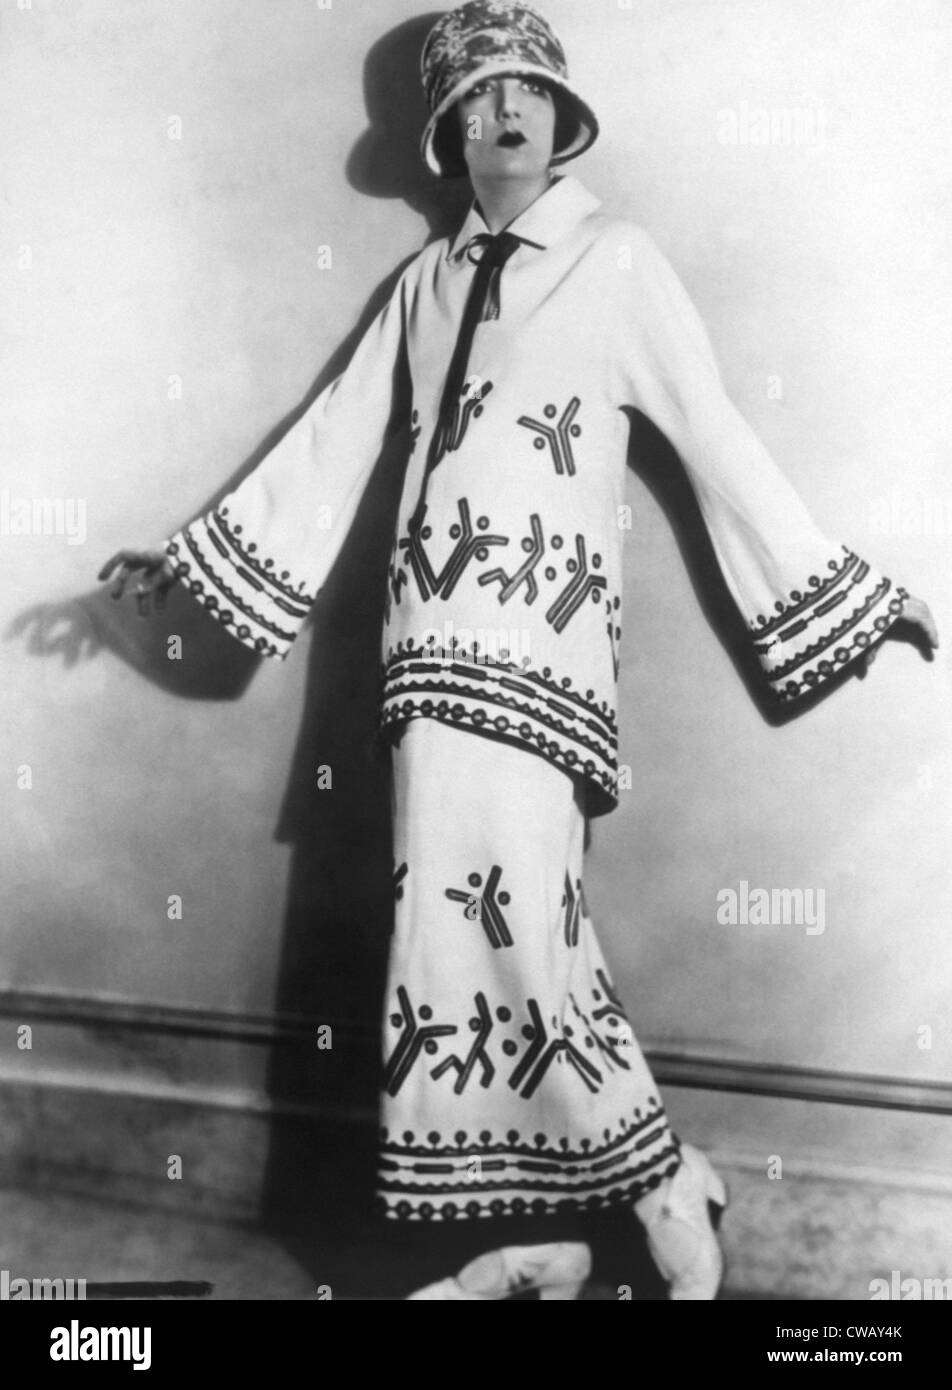 Zweiteilige Twill Kostüm mit Applikationen und Stickereien für den Sommer, 1922. Foto: Courtesy Everett Collection Stockfoto